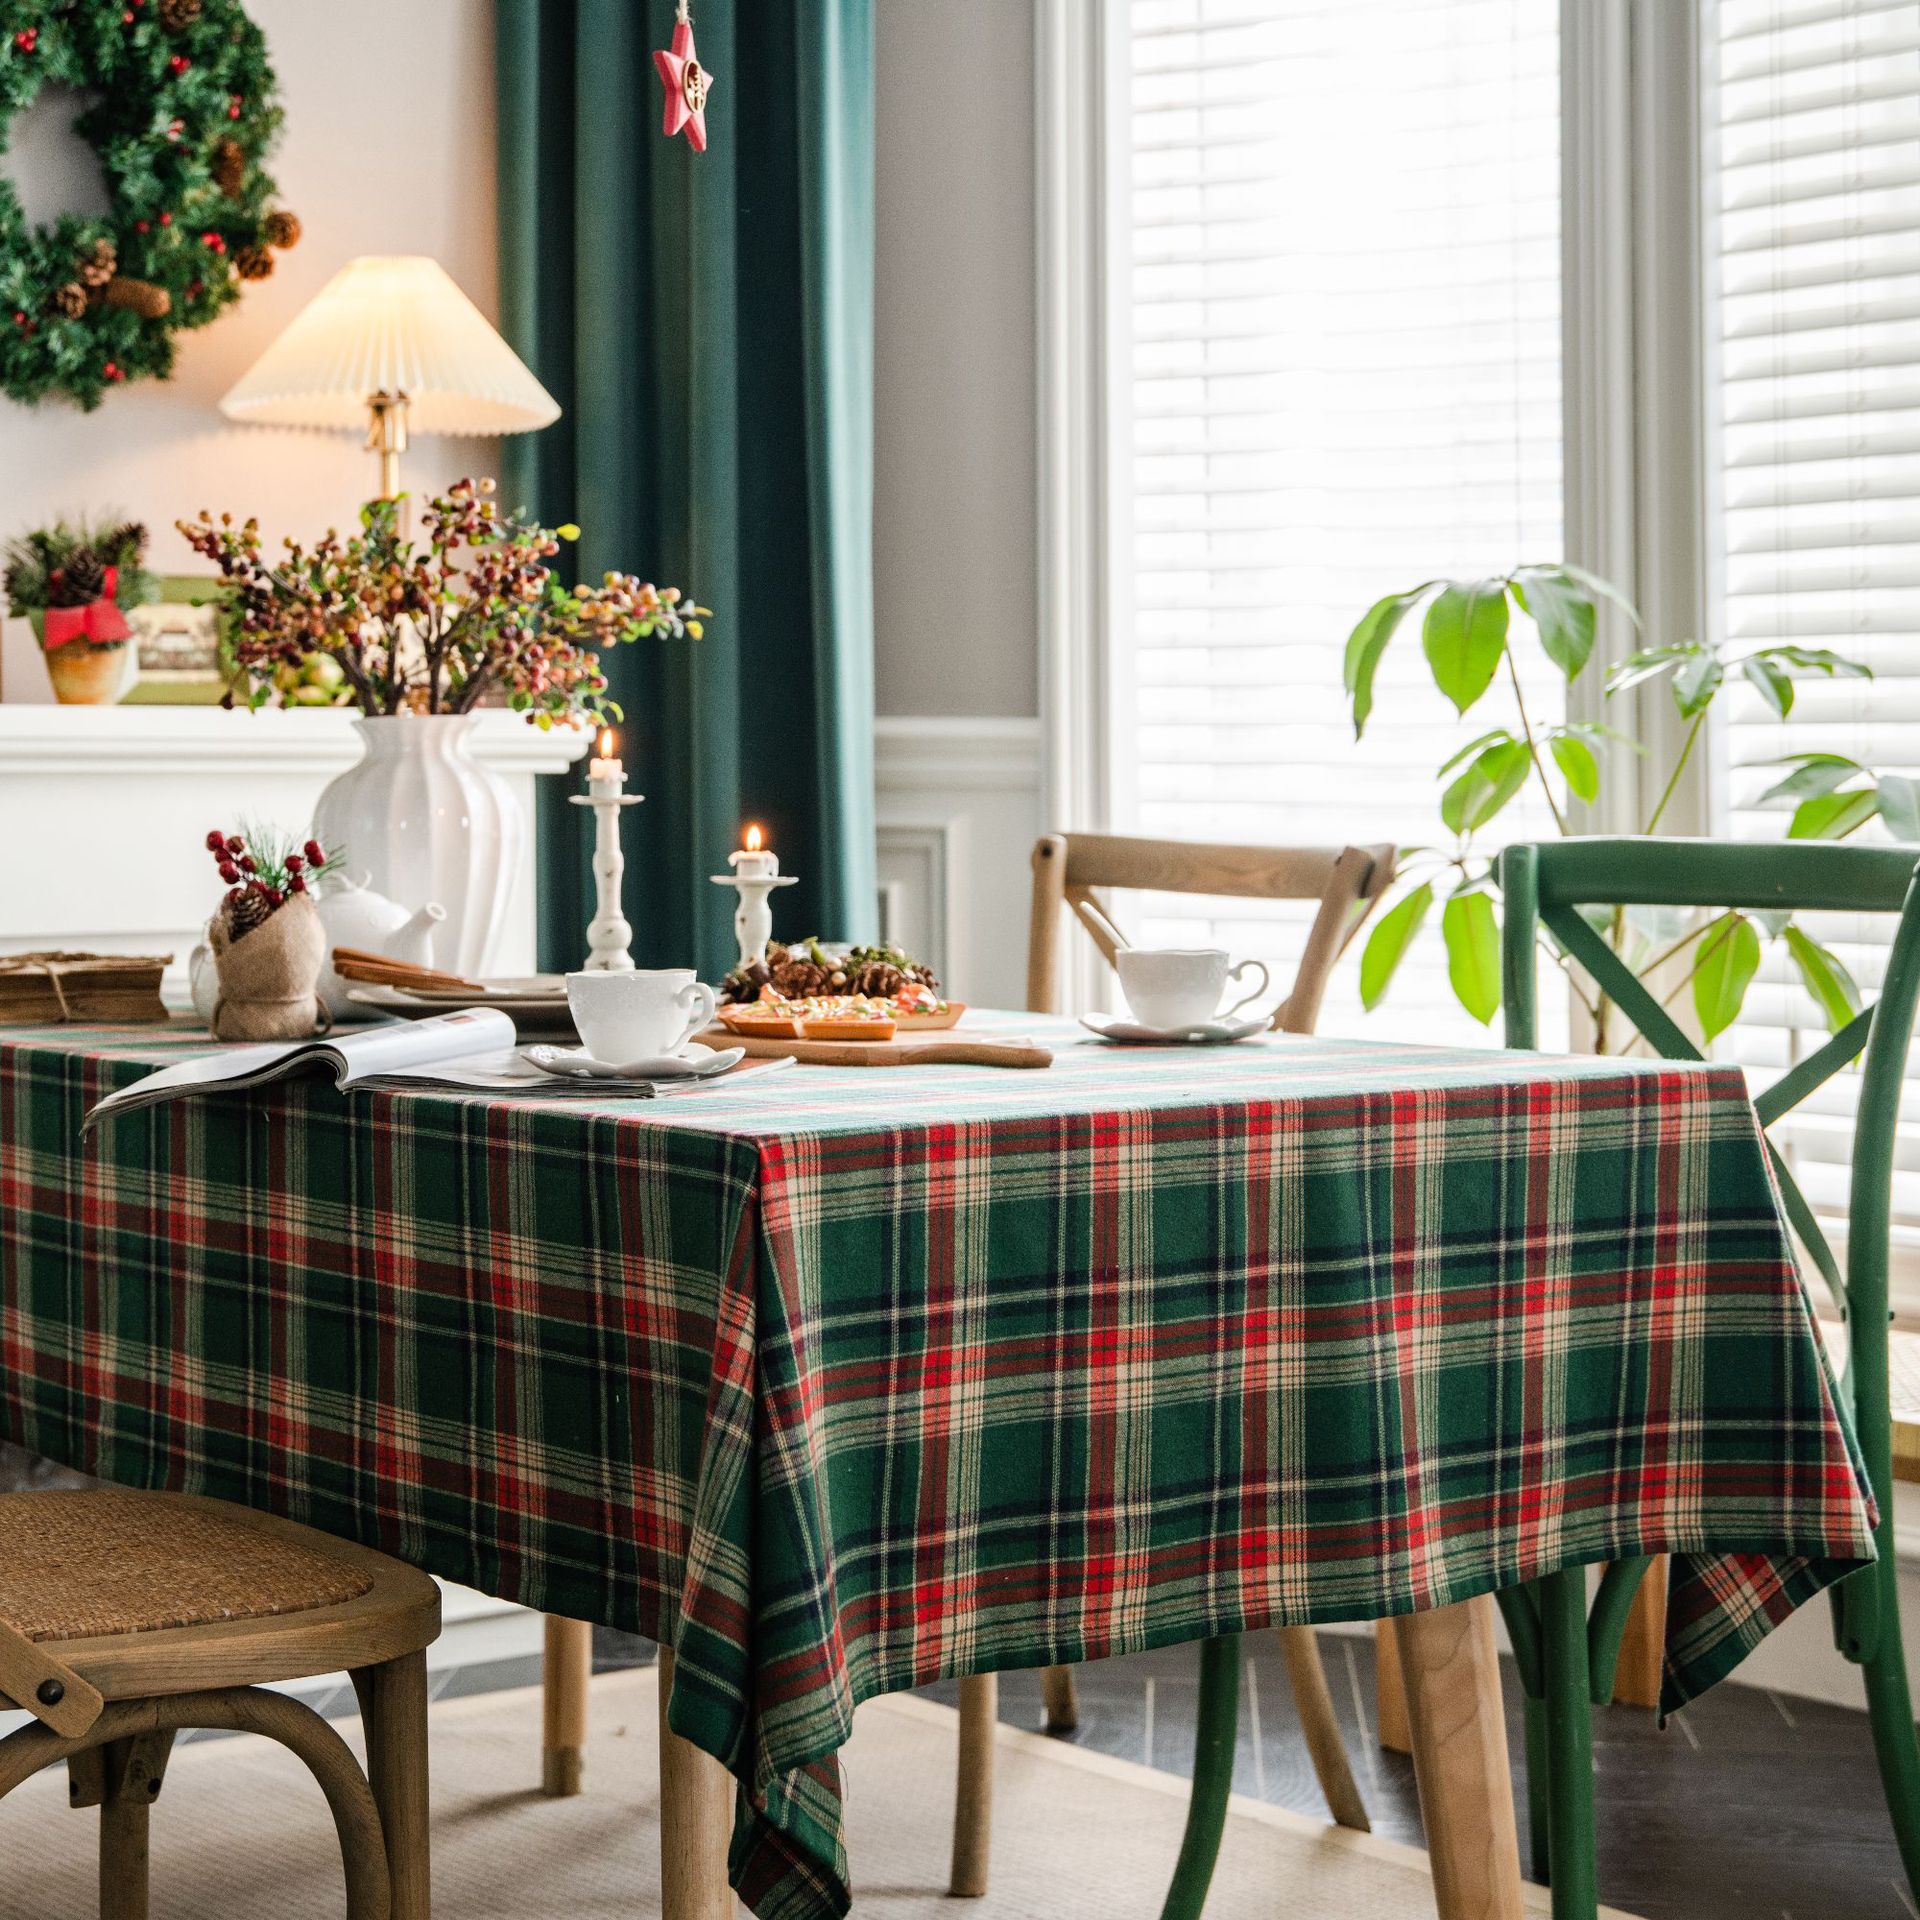 伊缦琪韵桌布色织绿色格子圣诞节日餐桌布美式布艺长方形厂家直供